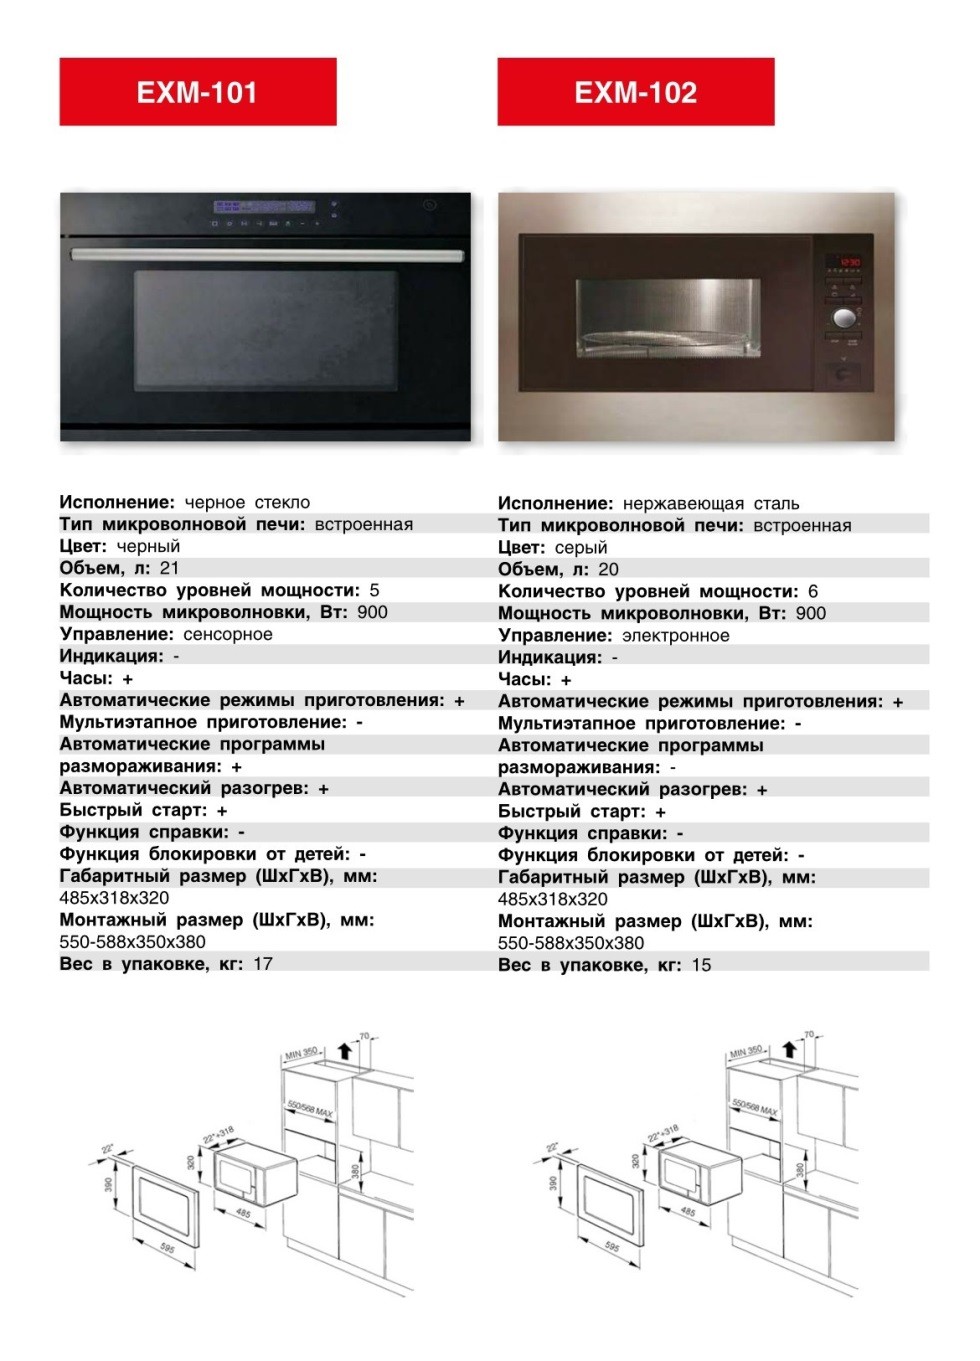 Микроволновка встраиваемая EXITEQ EXM-102. Продажа встраиваемой техники в Беларуси недорого